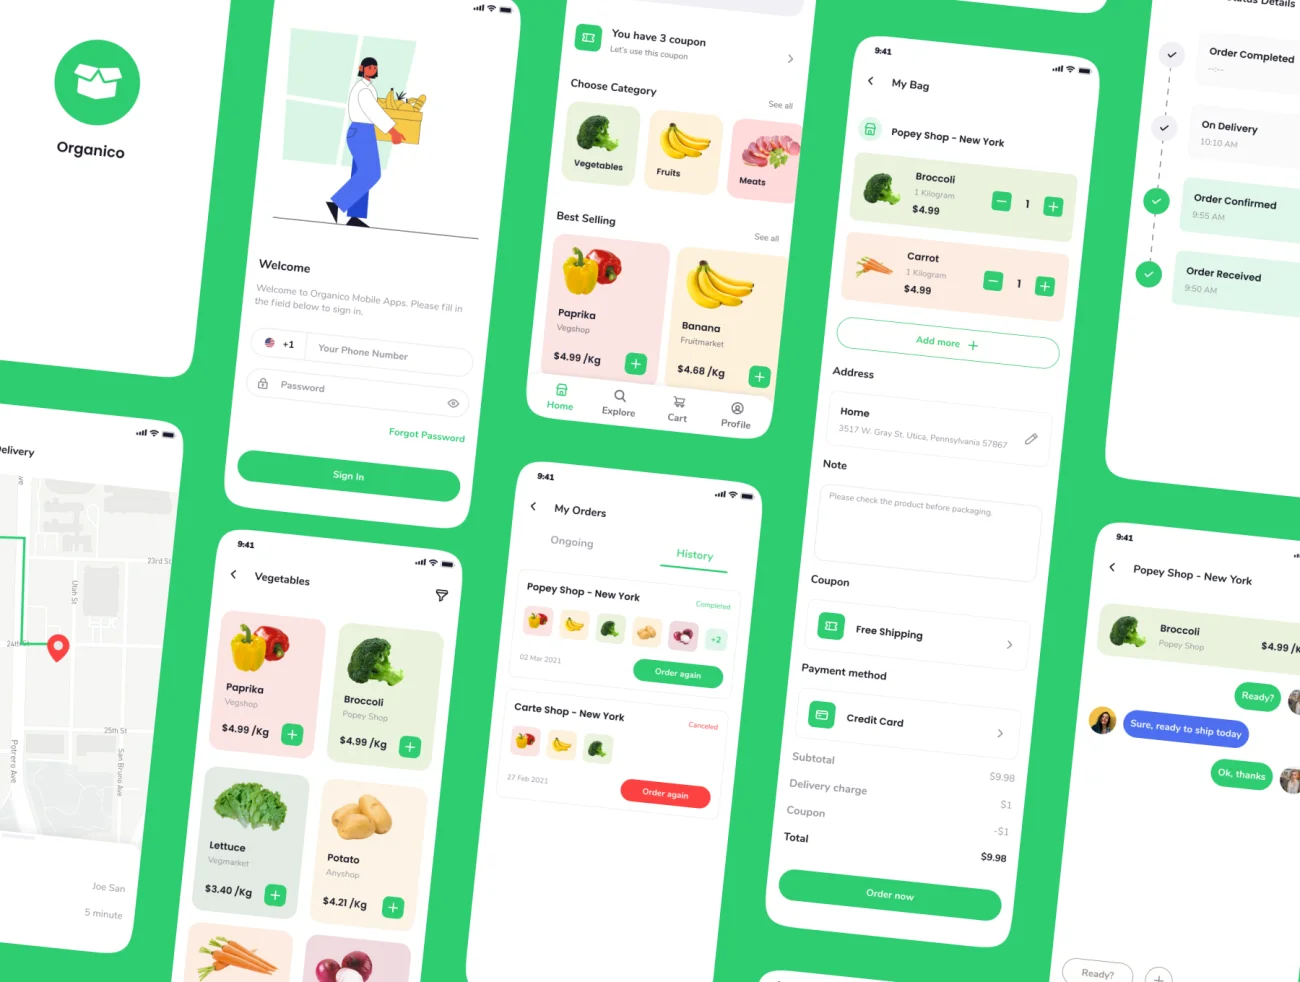 80屏日用品生鲜蔬菜水果百货采购应用UI设计套件 Organico Grocery App UI KIT插图11